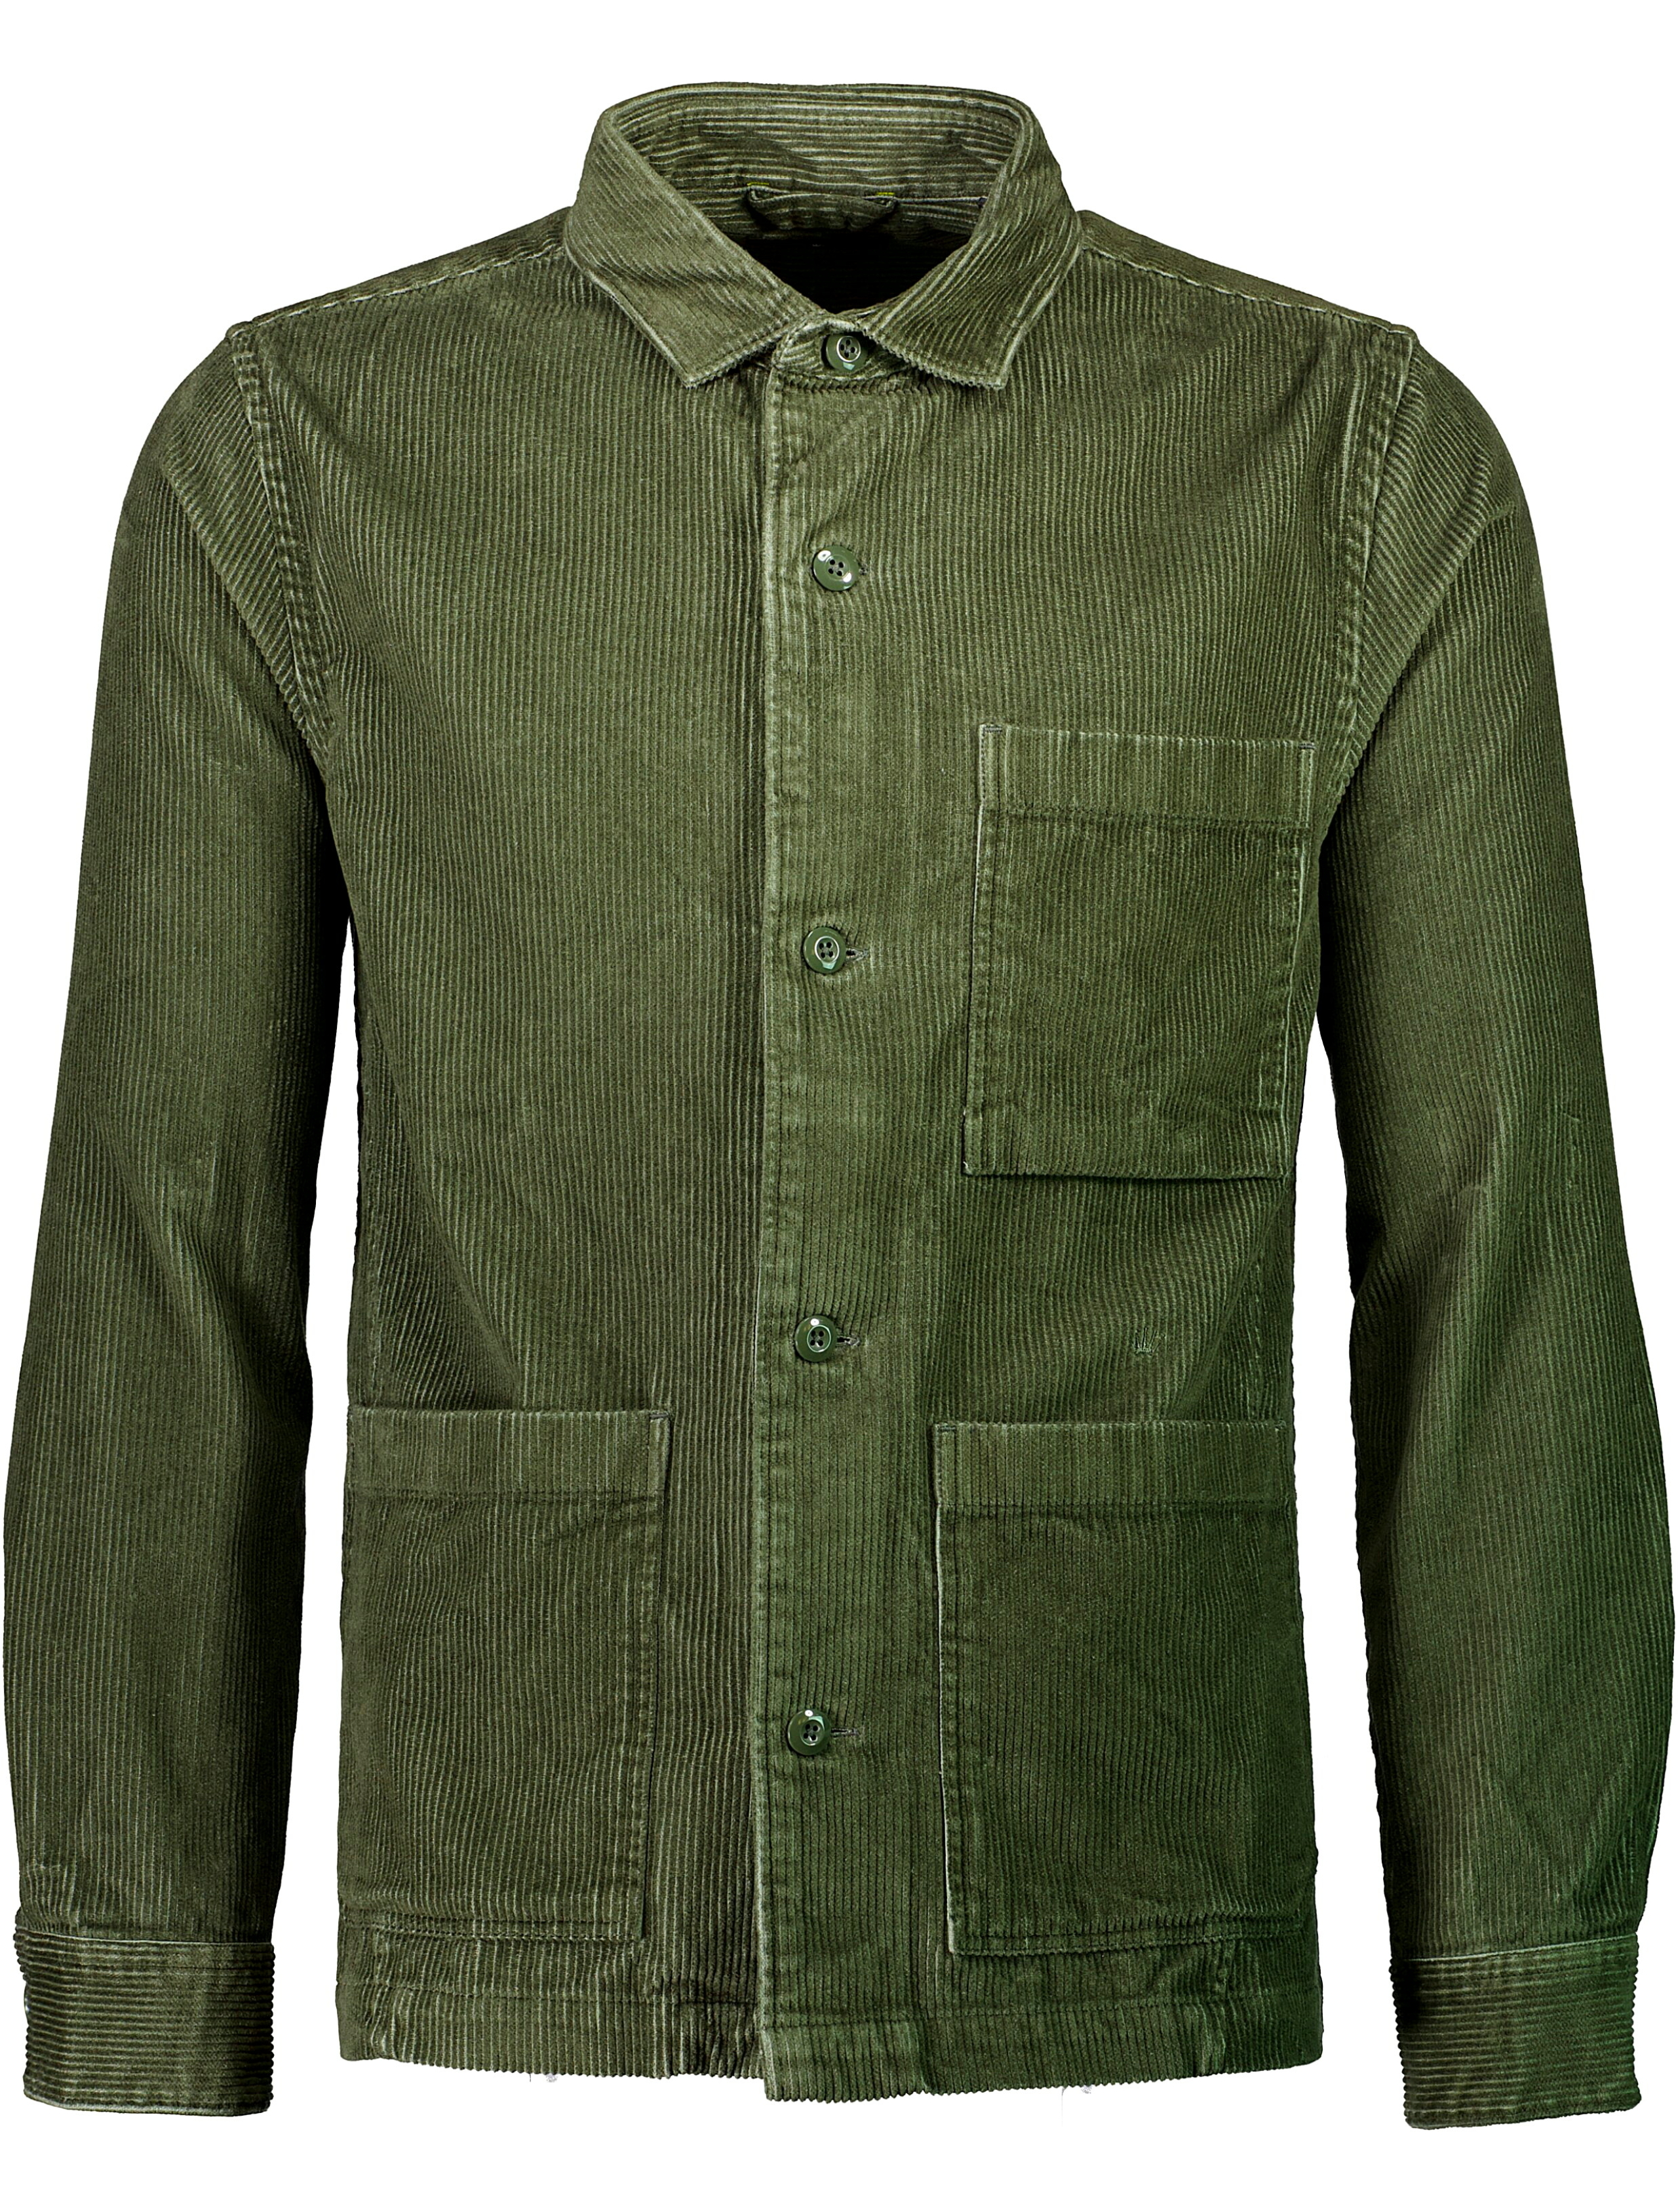 Junk de Luxe Overshirt grön / army